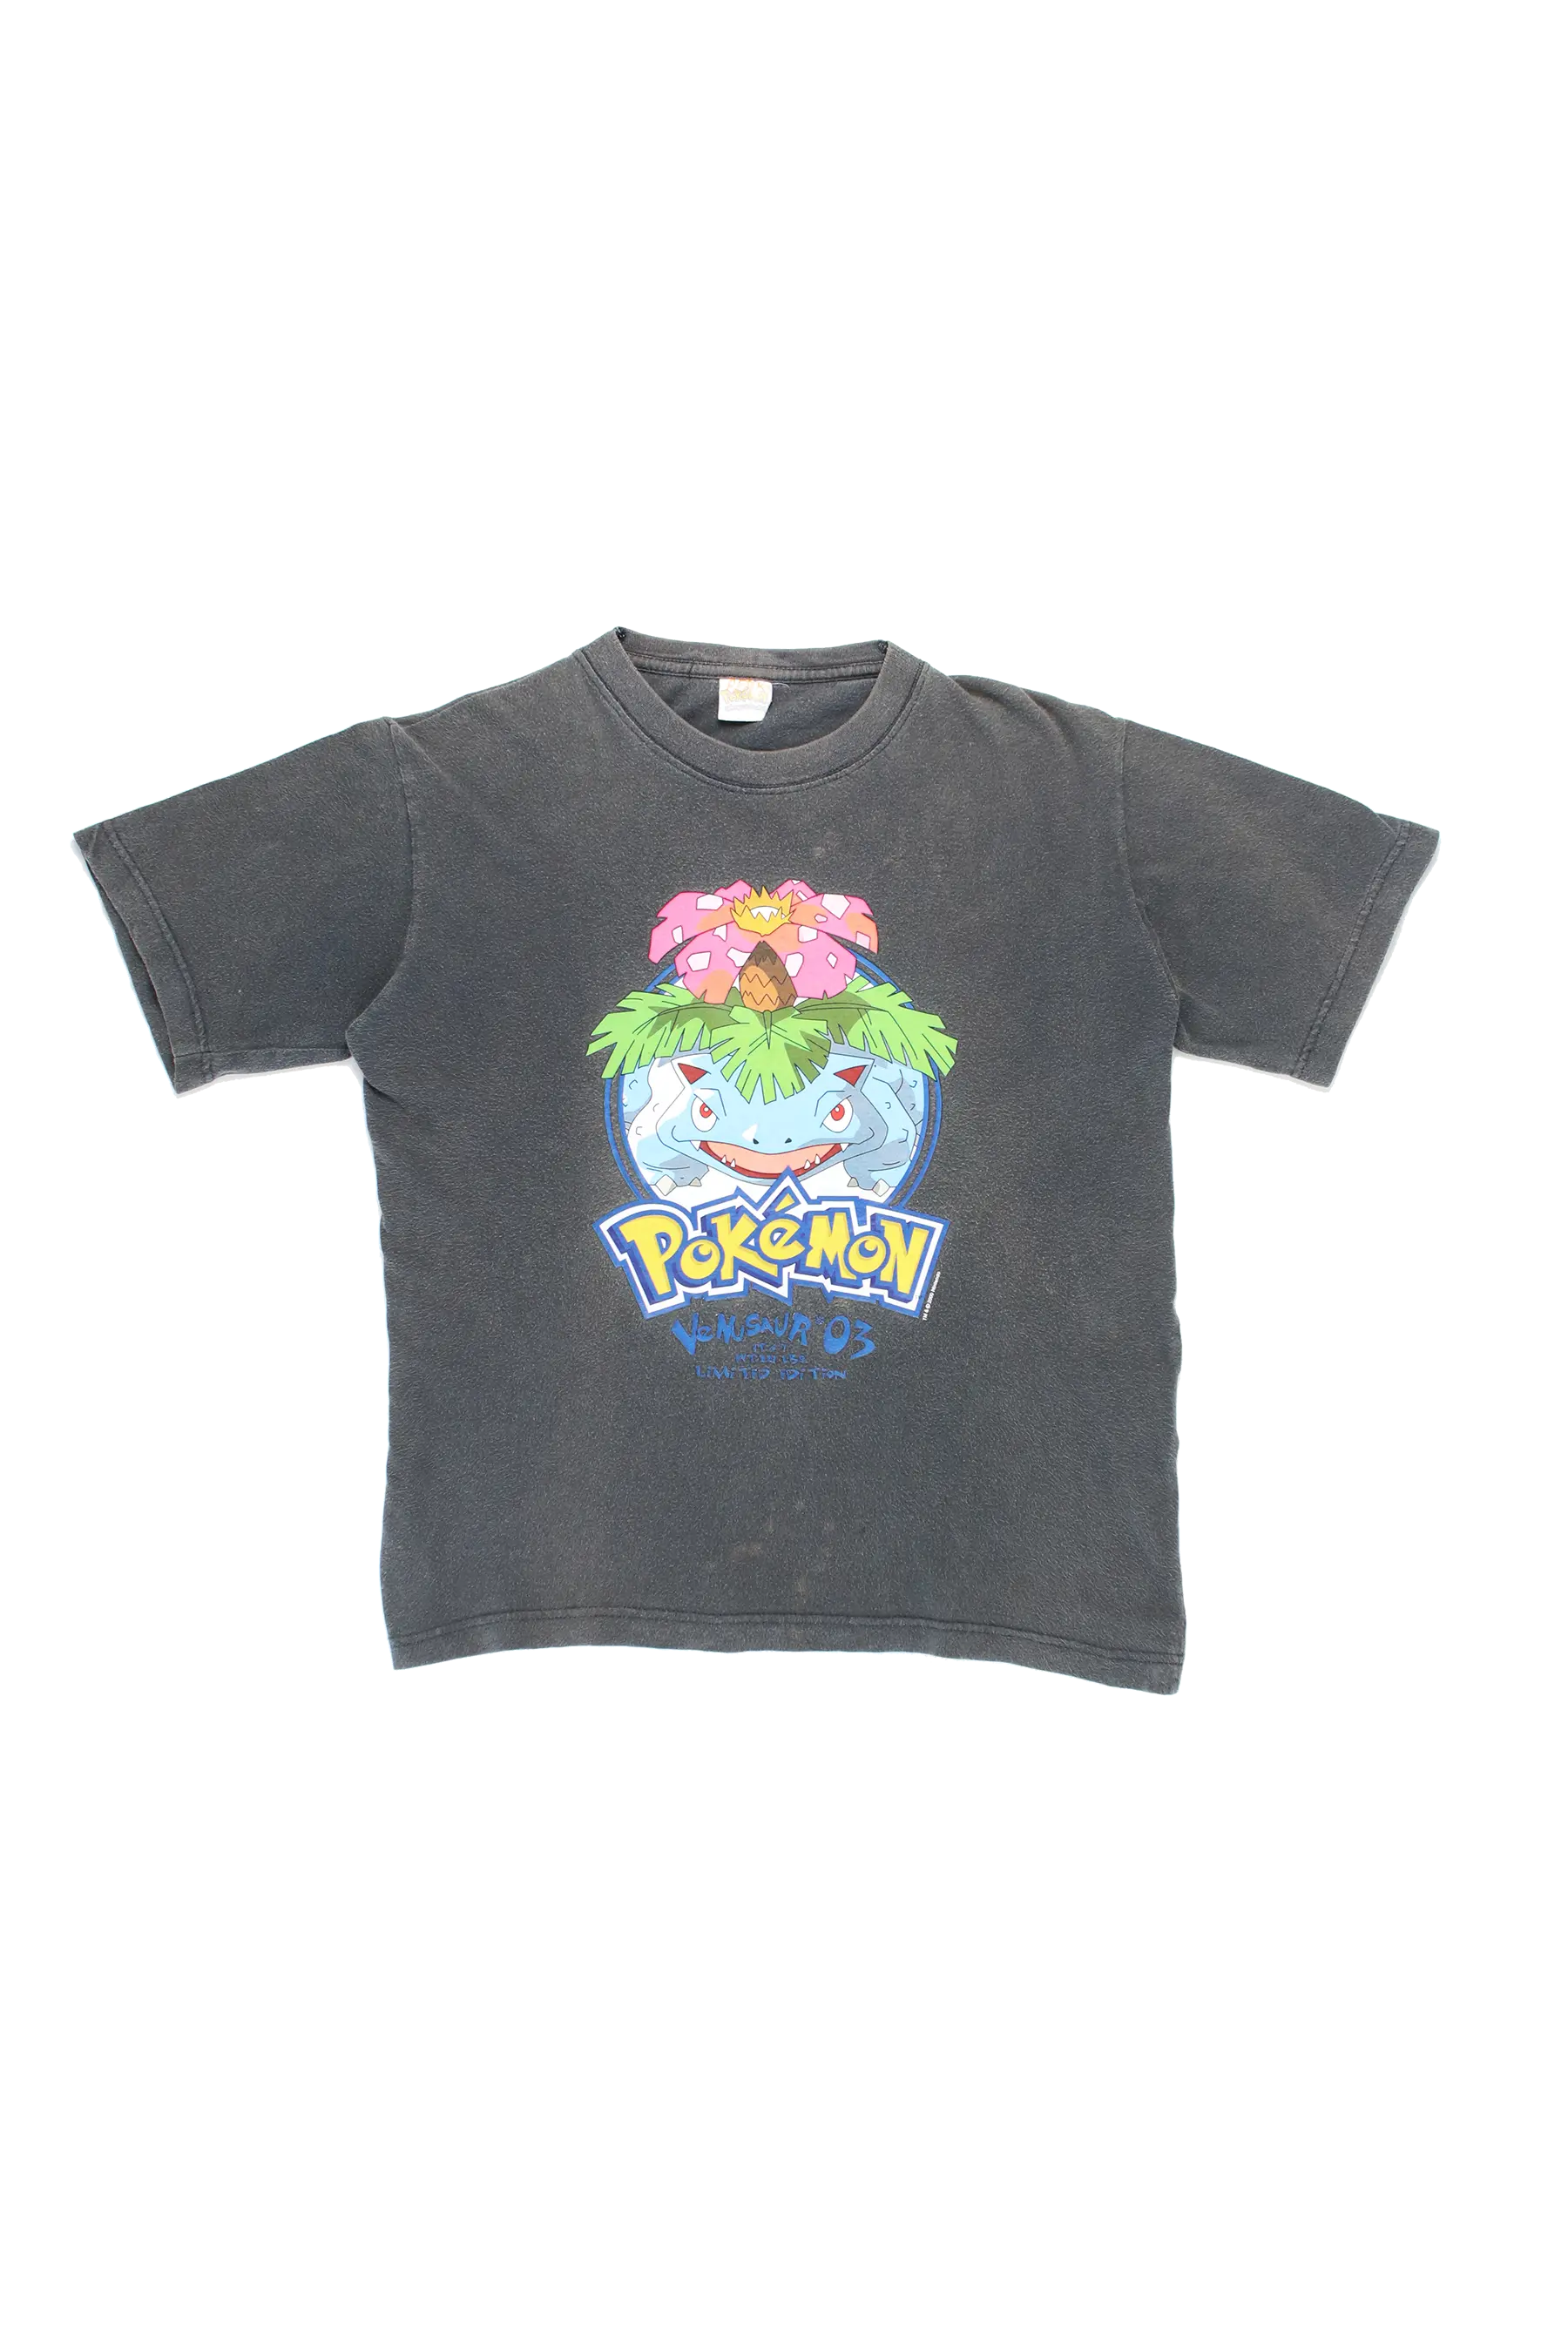 Pokémon 2000 Venusaur T-Shirt